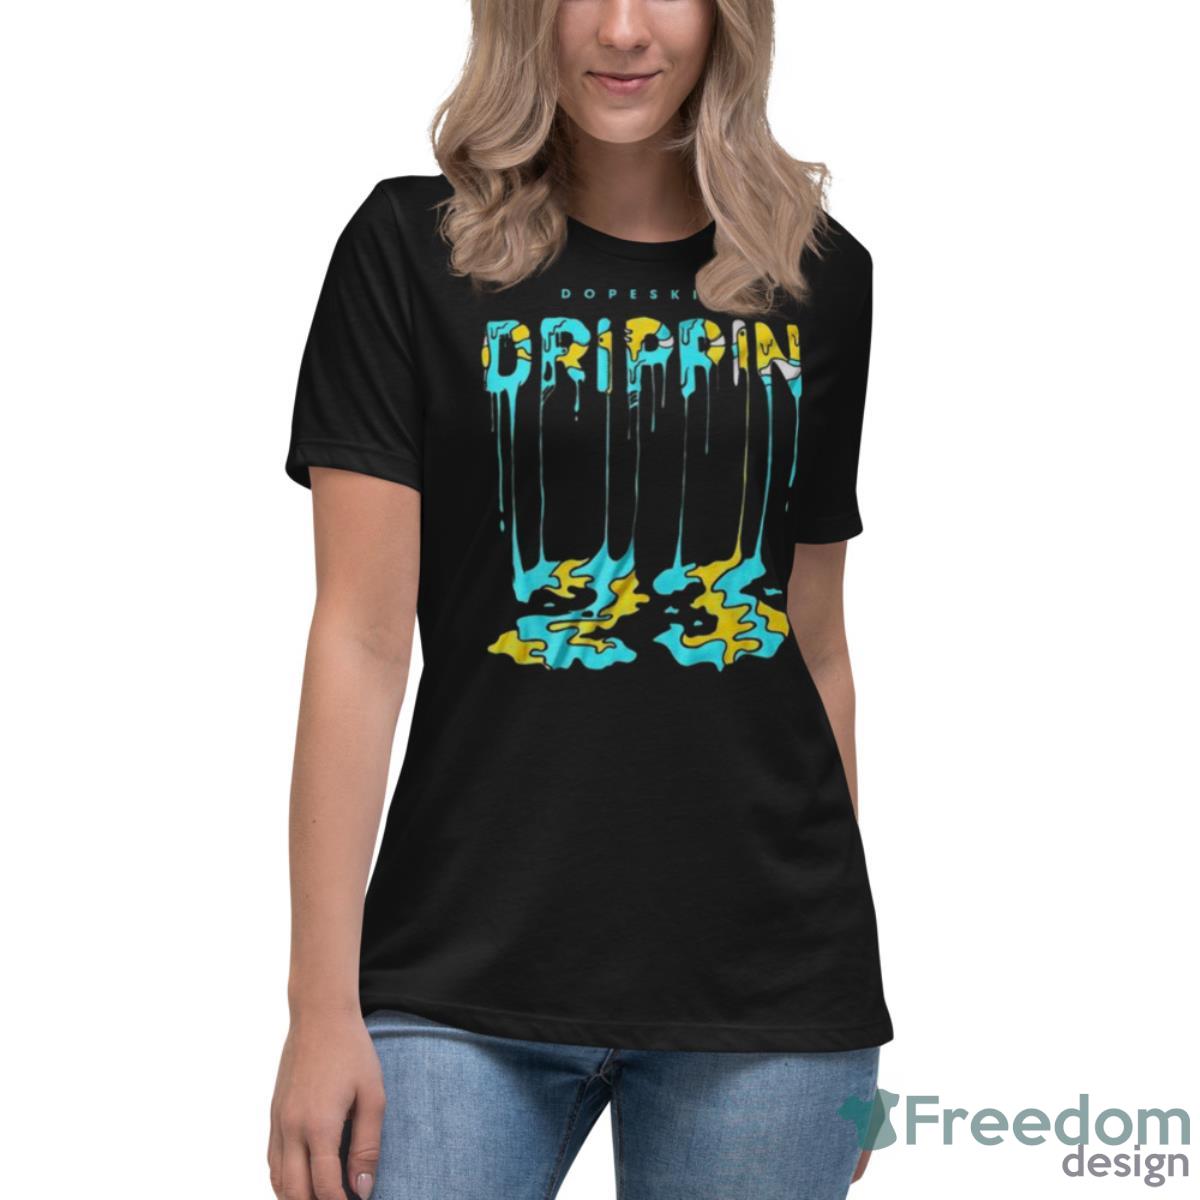 Aqua 5s DopeSkill Drippin Shirt